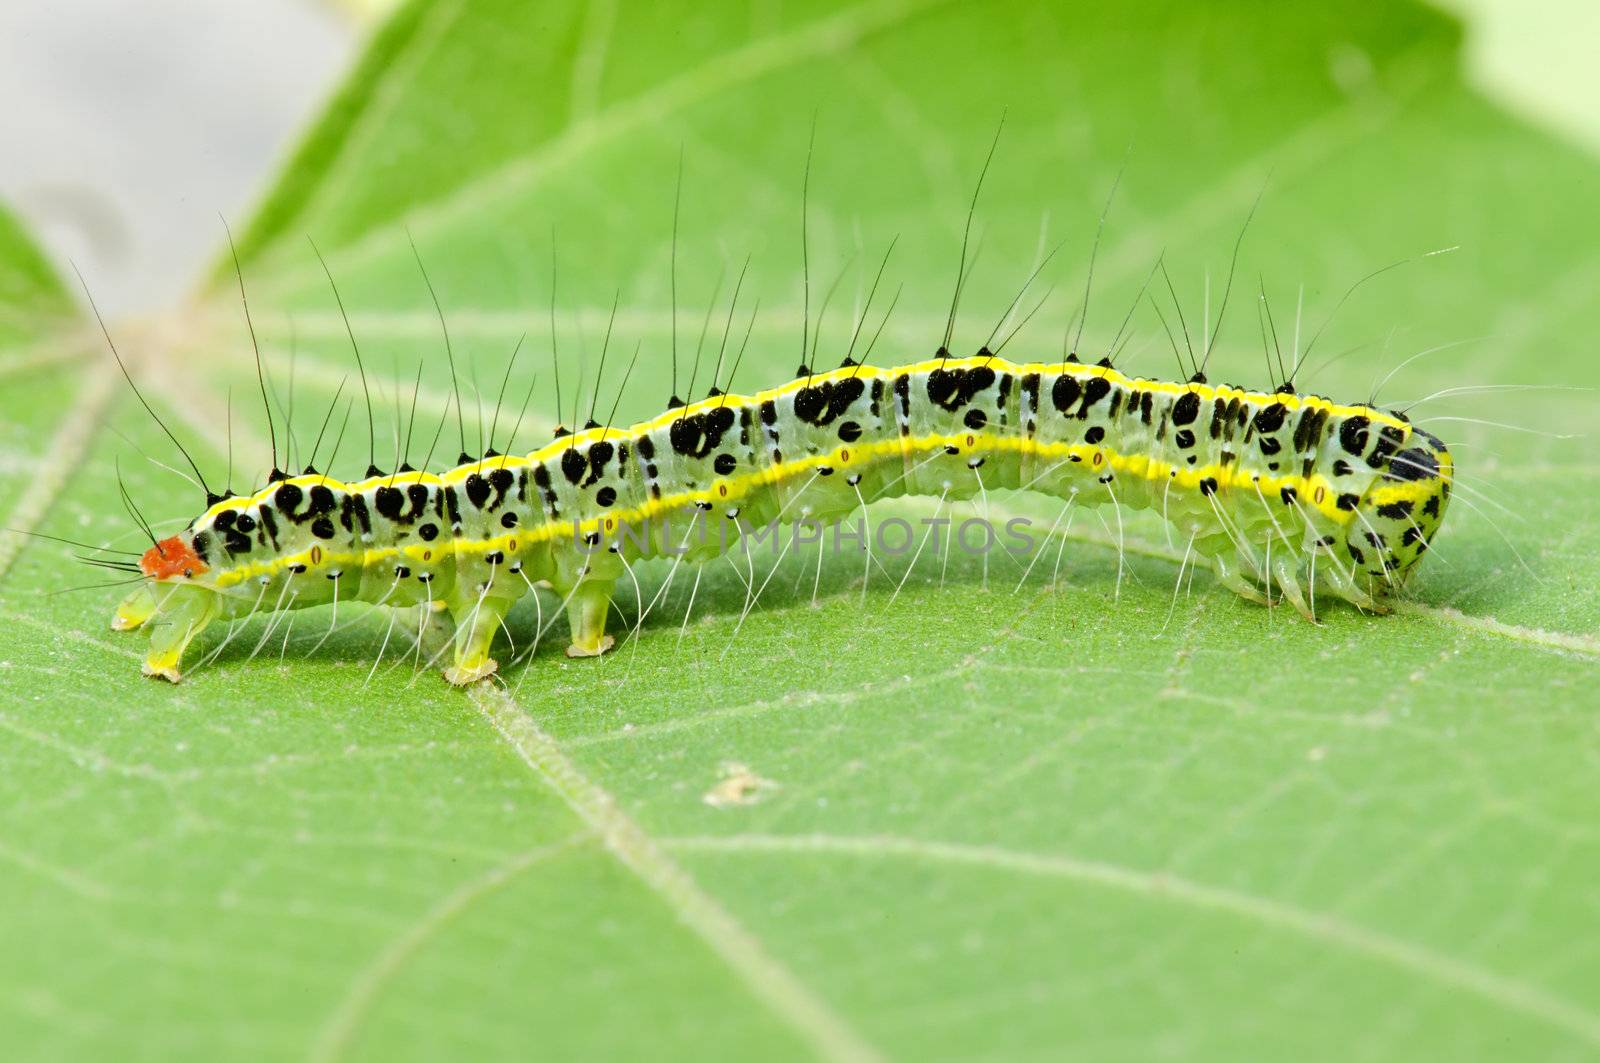 a cute caterpillar on leaf by jackq